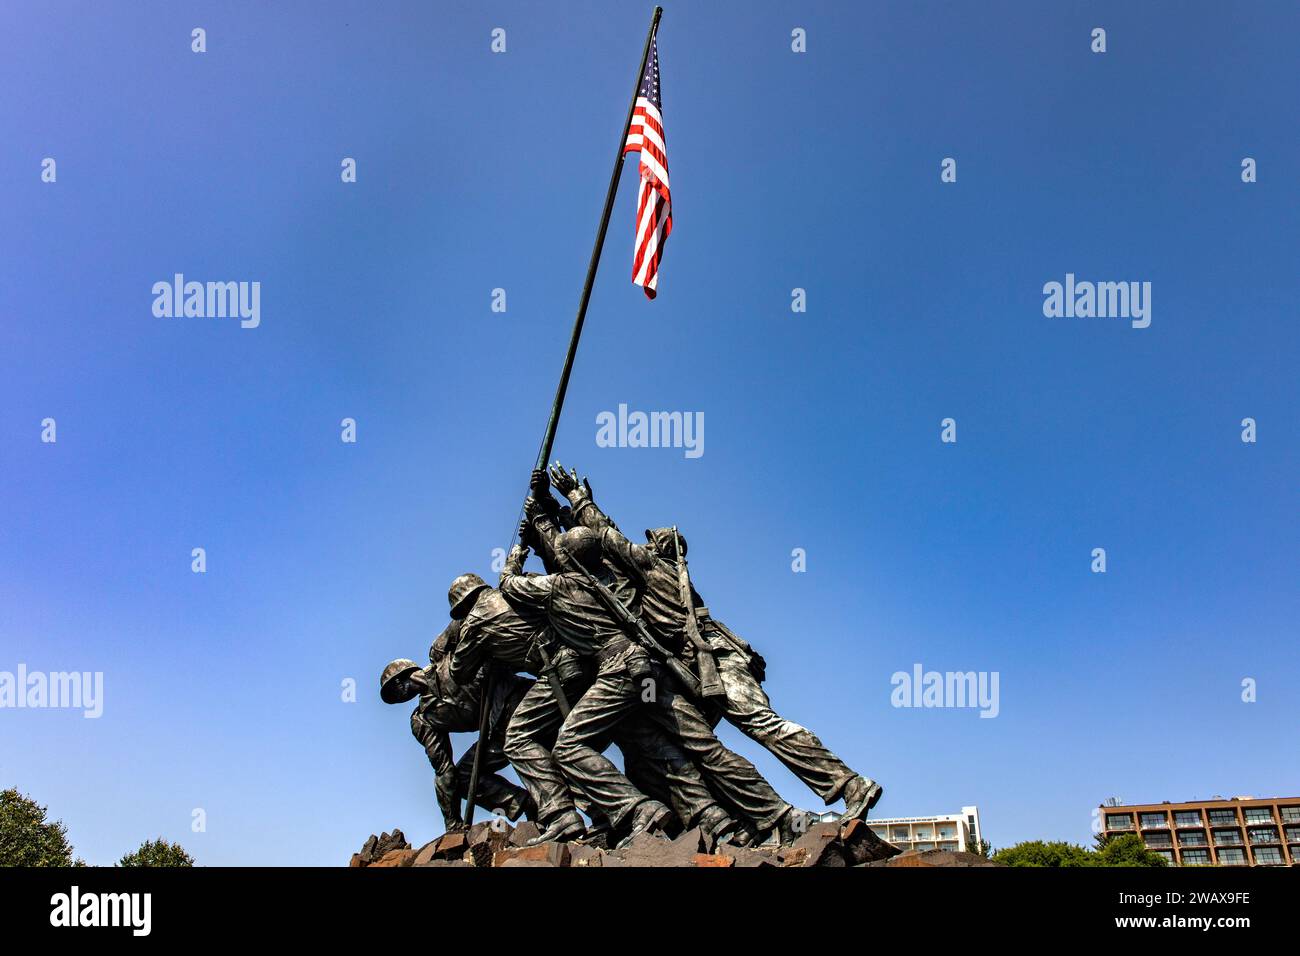 L'Iwo Jima Memorial, che è il memoriale di guerra del corpo dei Marines degli Stati Uniti, nella capitale federale, Washington DC (USA). Foto Stock